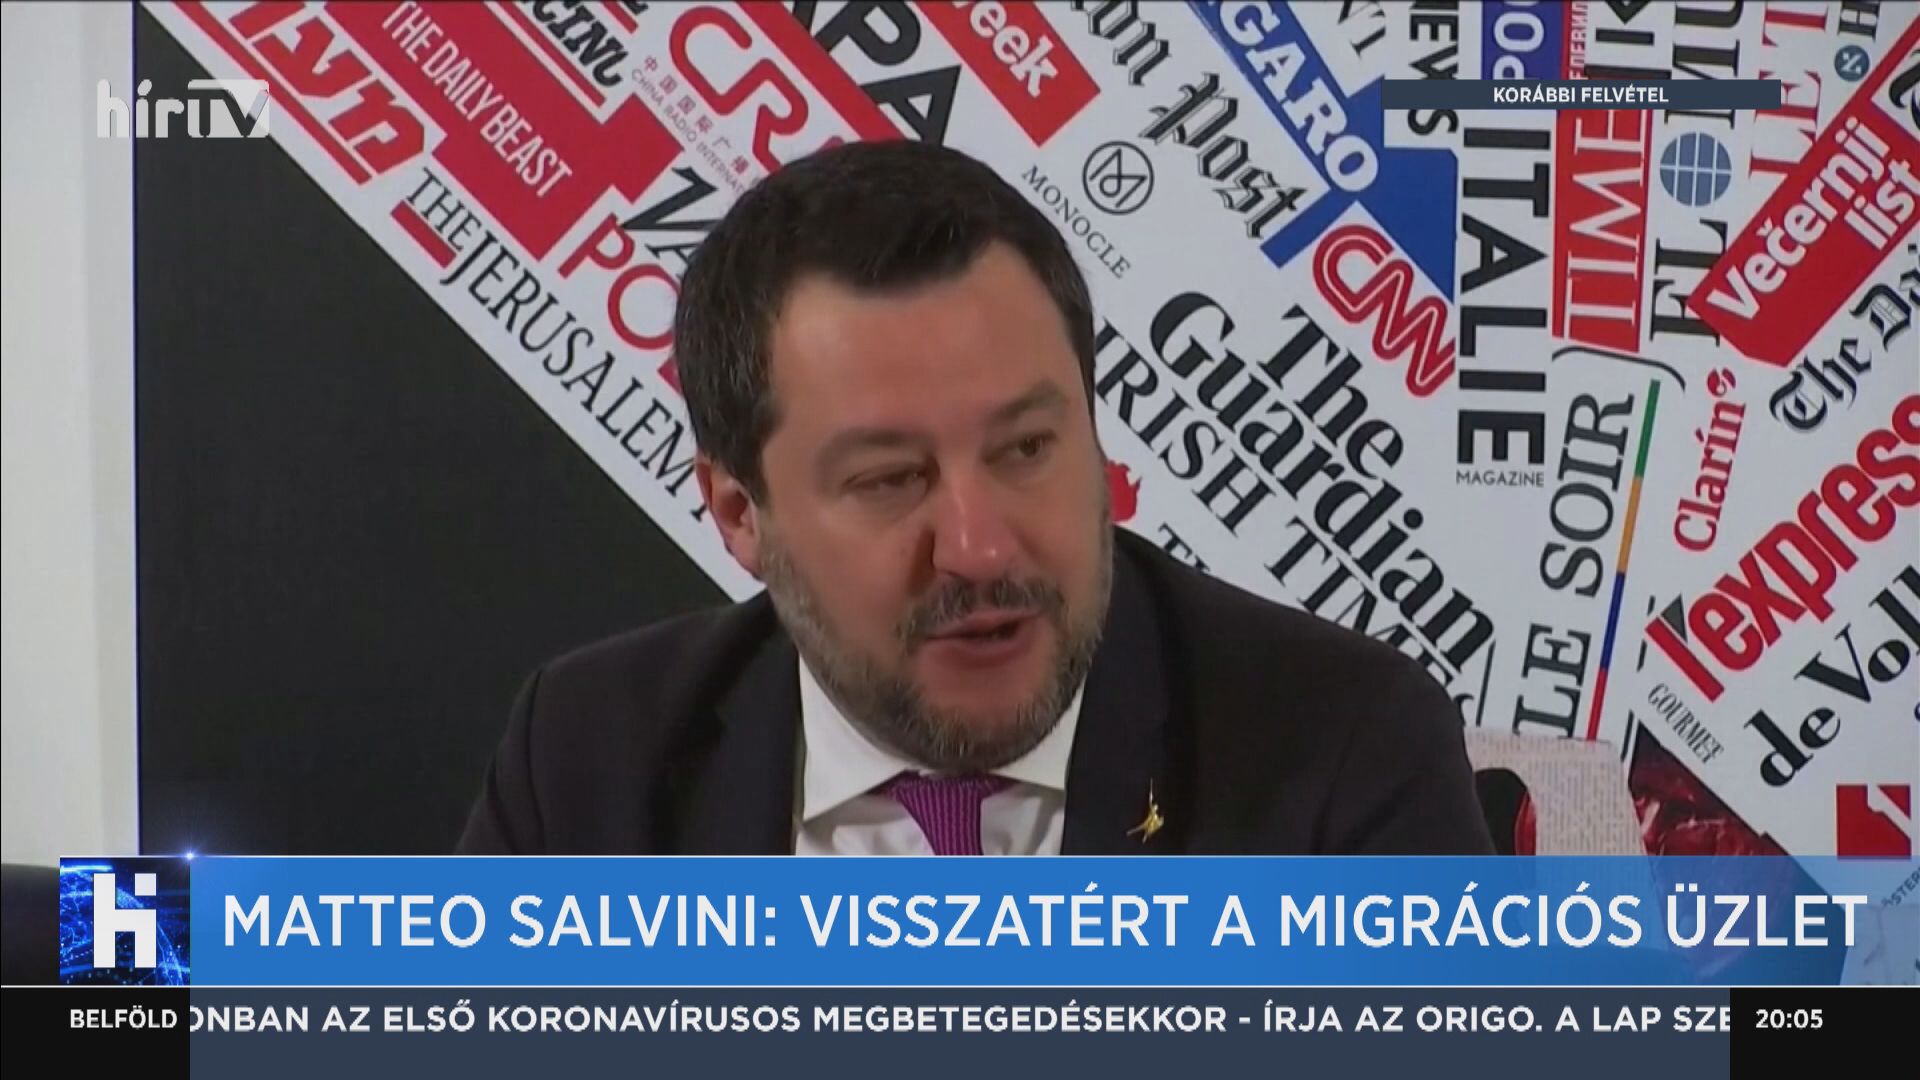 Matteo Salvini: Visszatért a migrációs üzlet